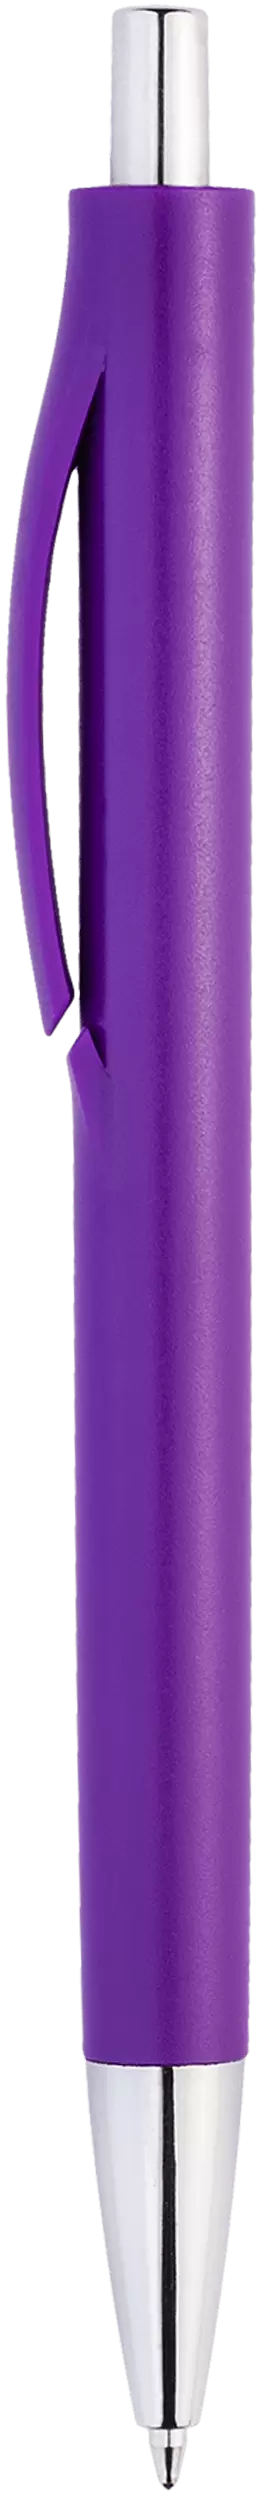 Ручка IGLA CHROME Фиолетовая 1032.11